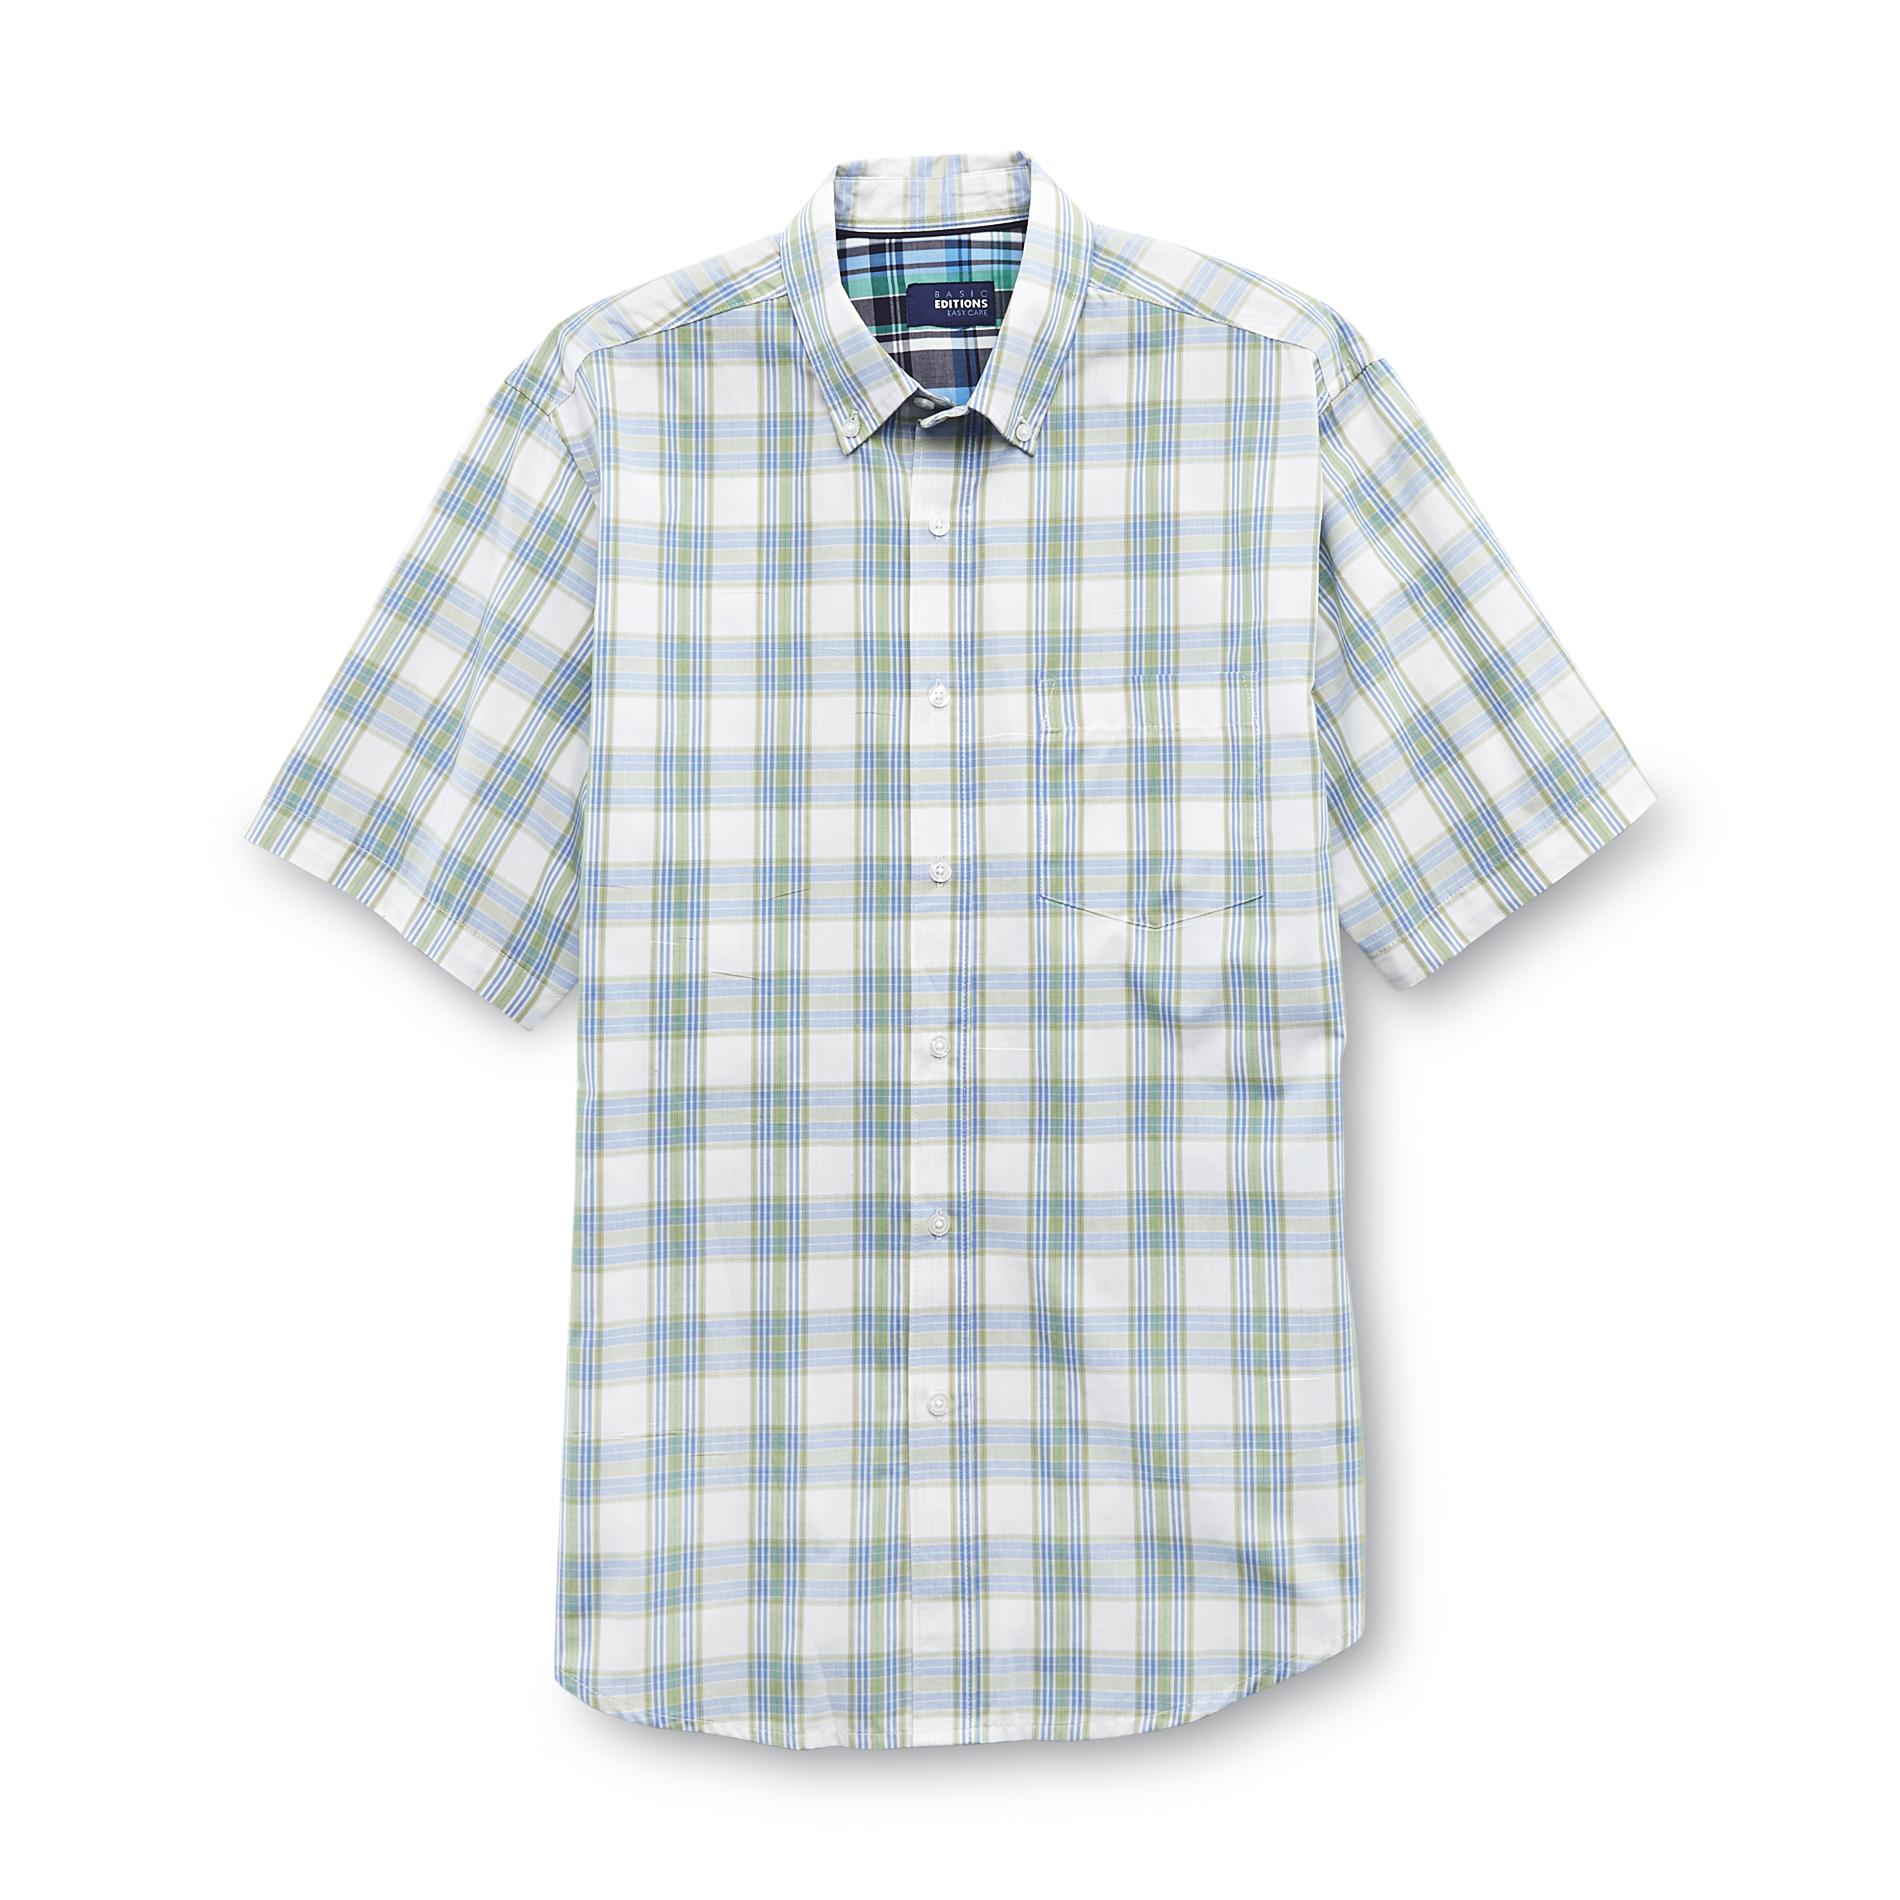 Basic Editions Men's Short-Sleeve Poplin Shirt - Plaid